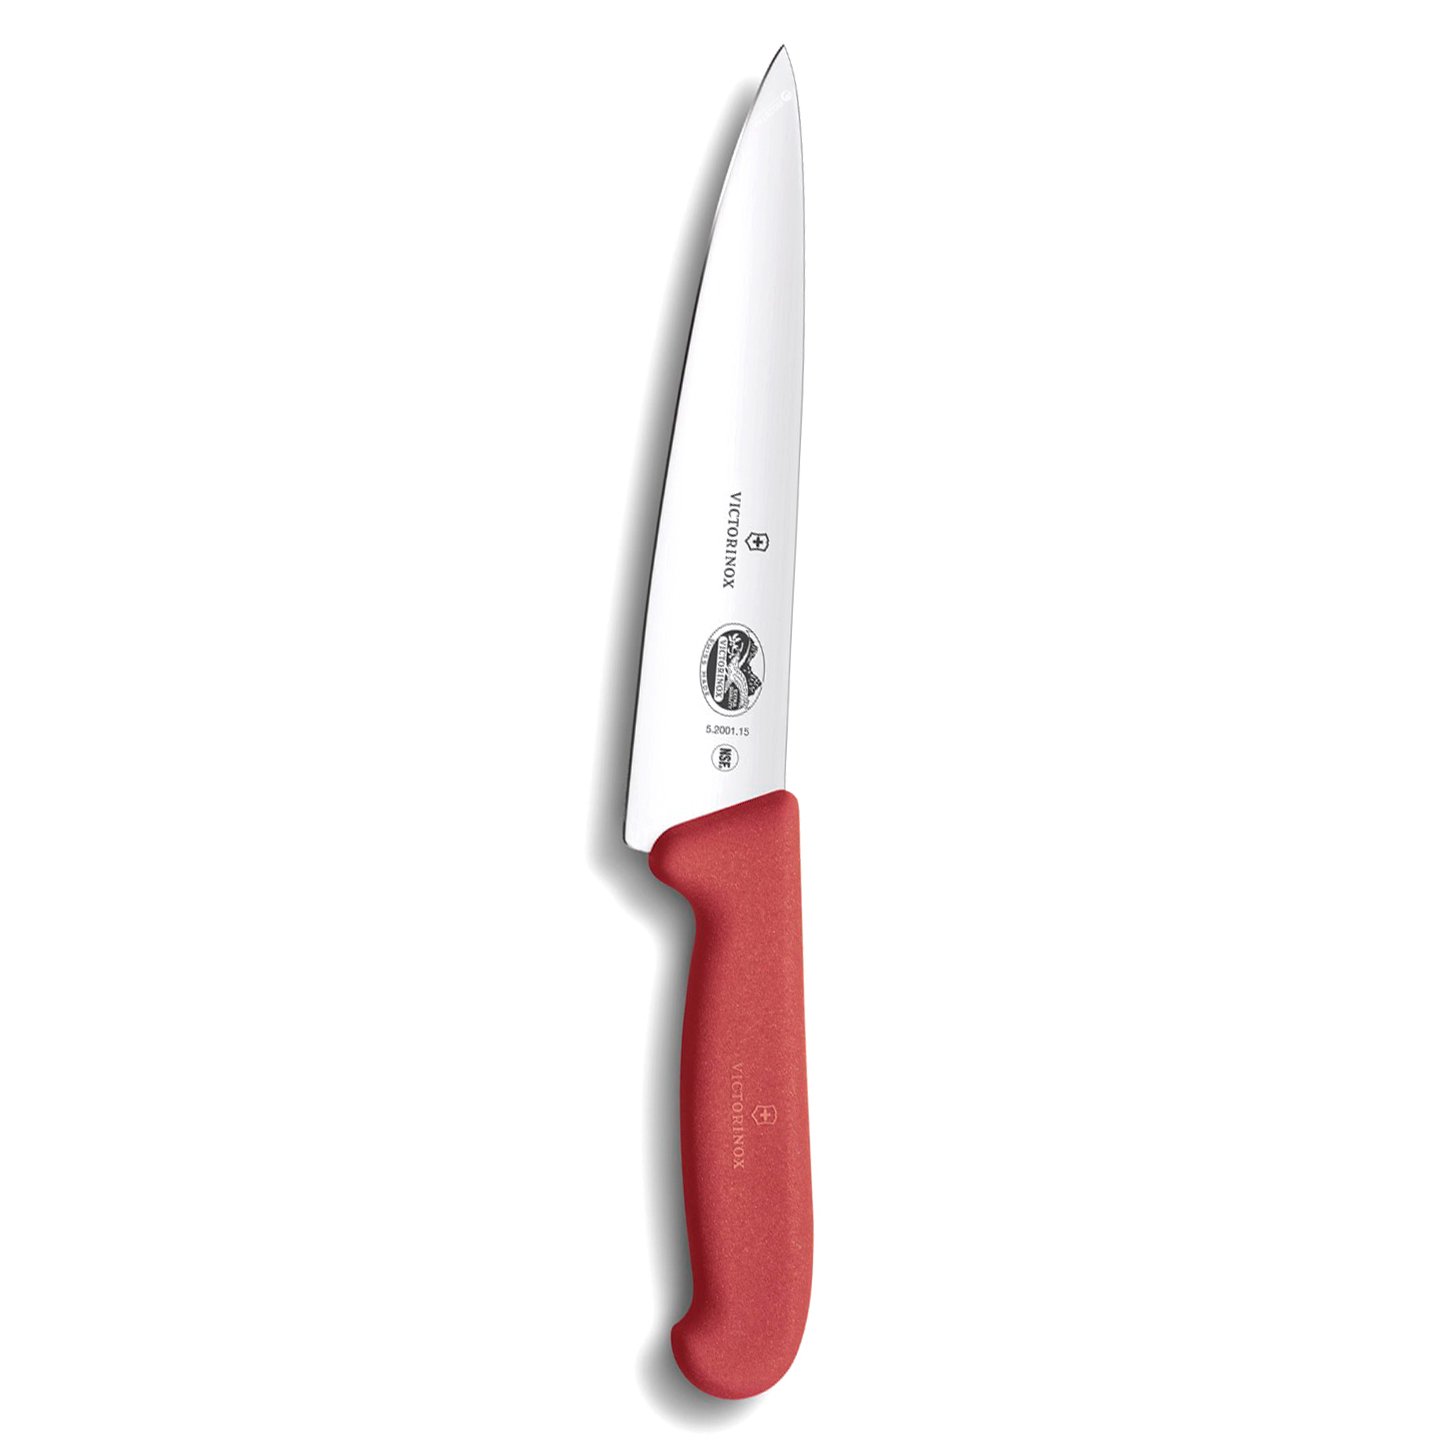 фото Кухонный нож victorinox, сталь x55crmo14, рукоять tpe, красный